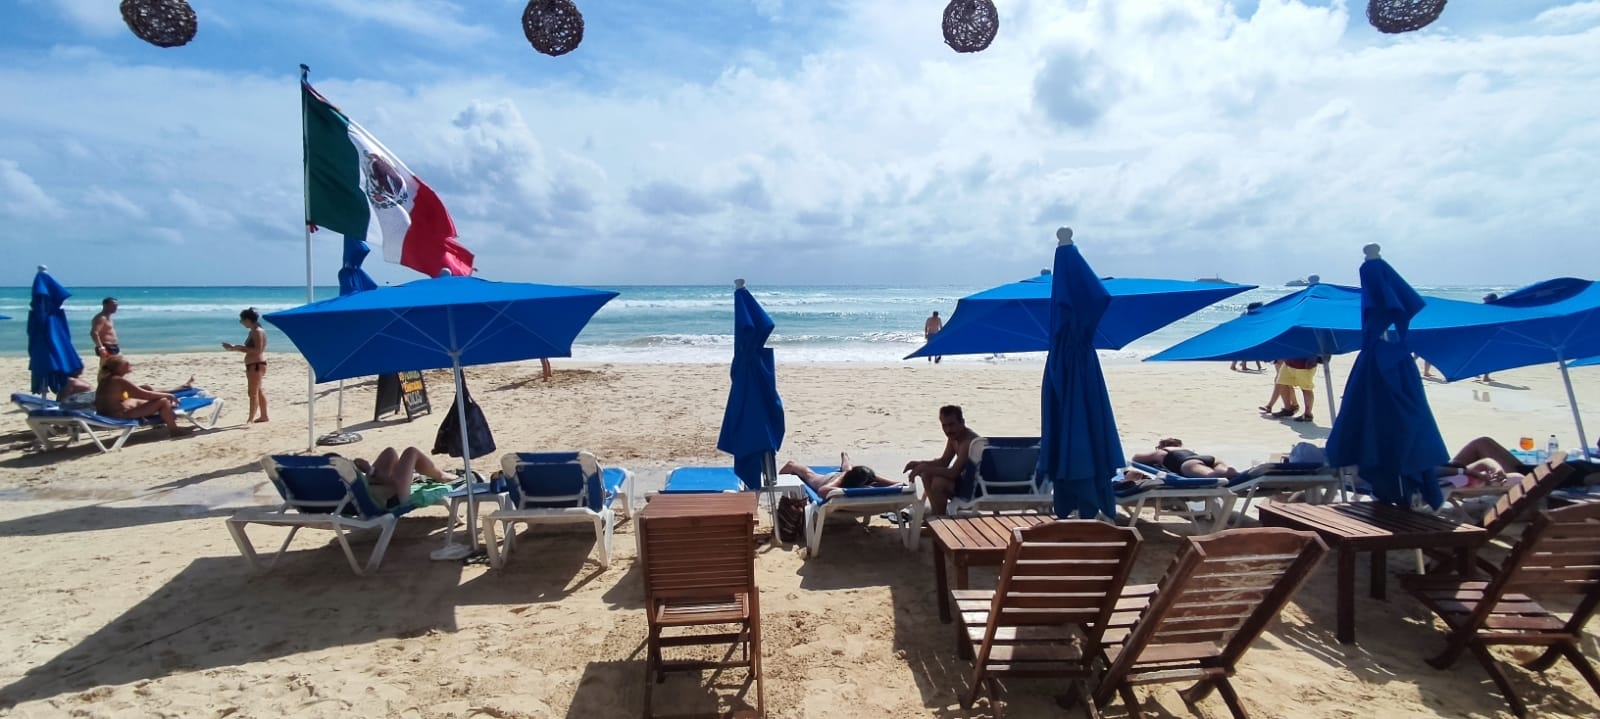 En Playa del Carmen, oleaje aumentó en las playas debido a Frente Frío